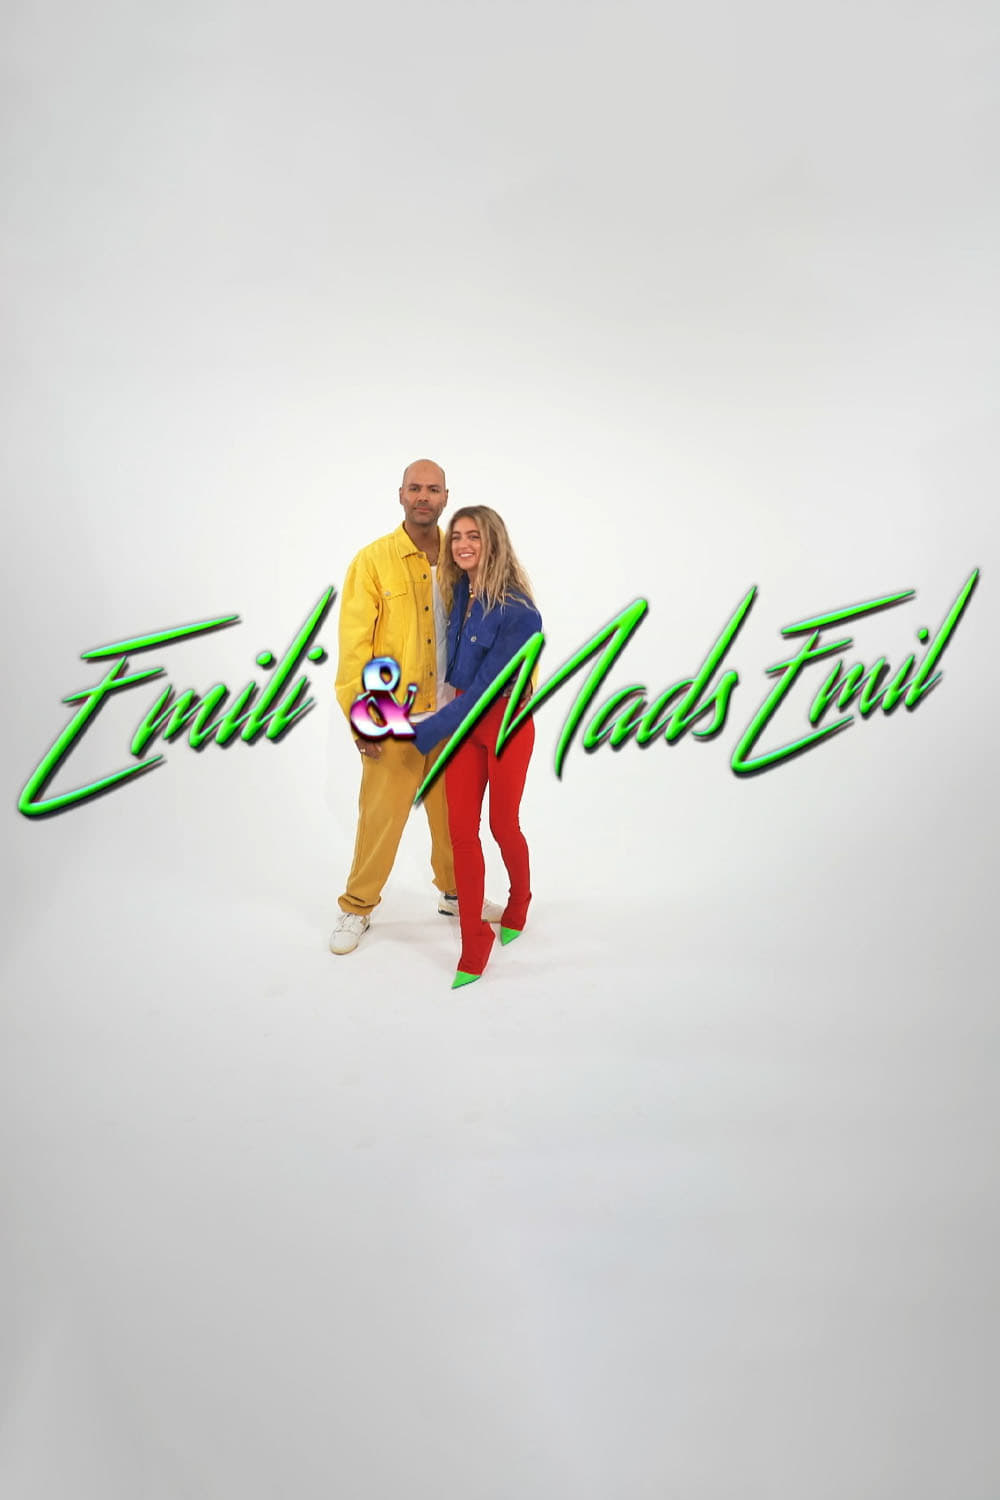 Emili & Mads Emil